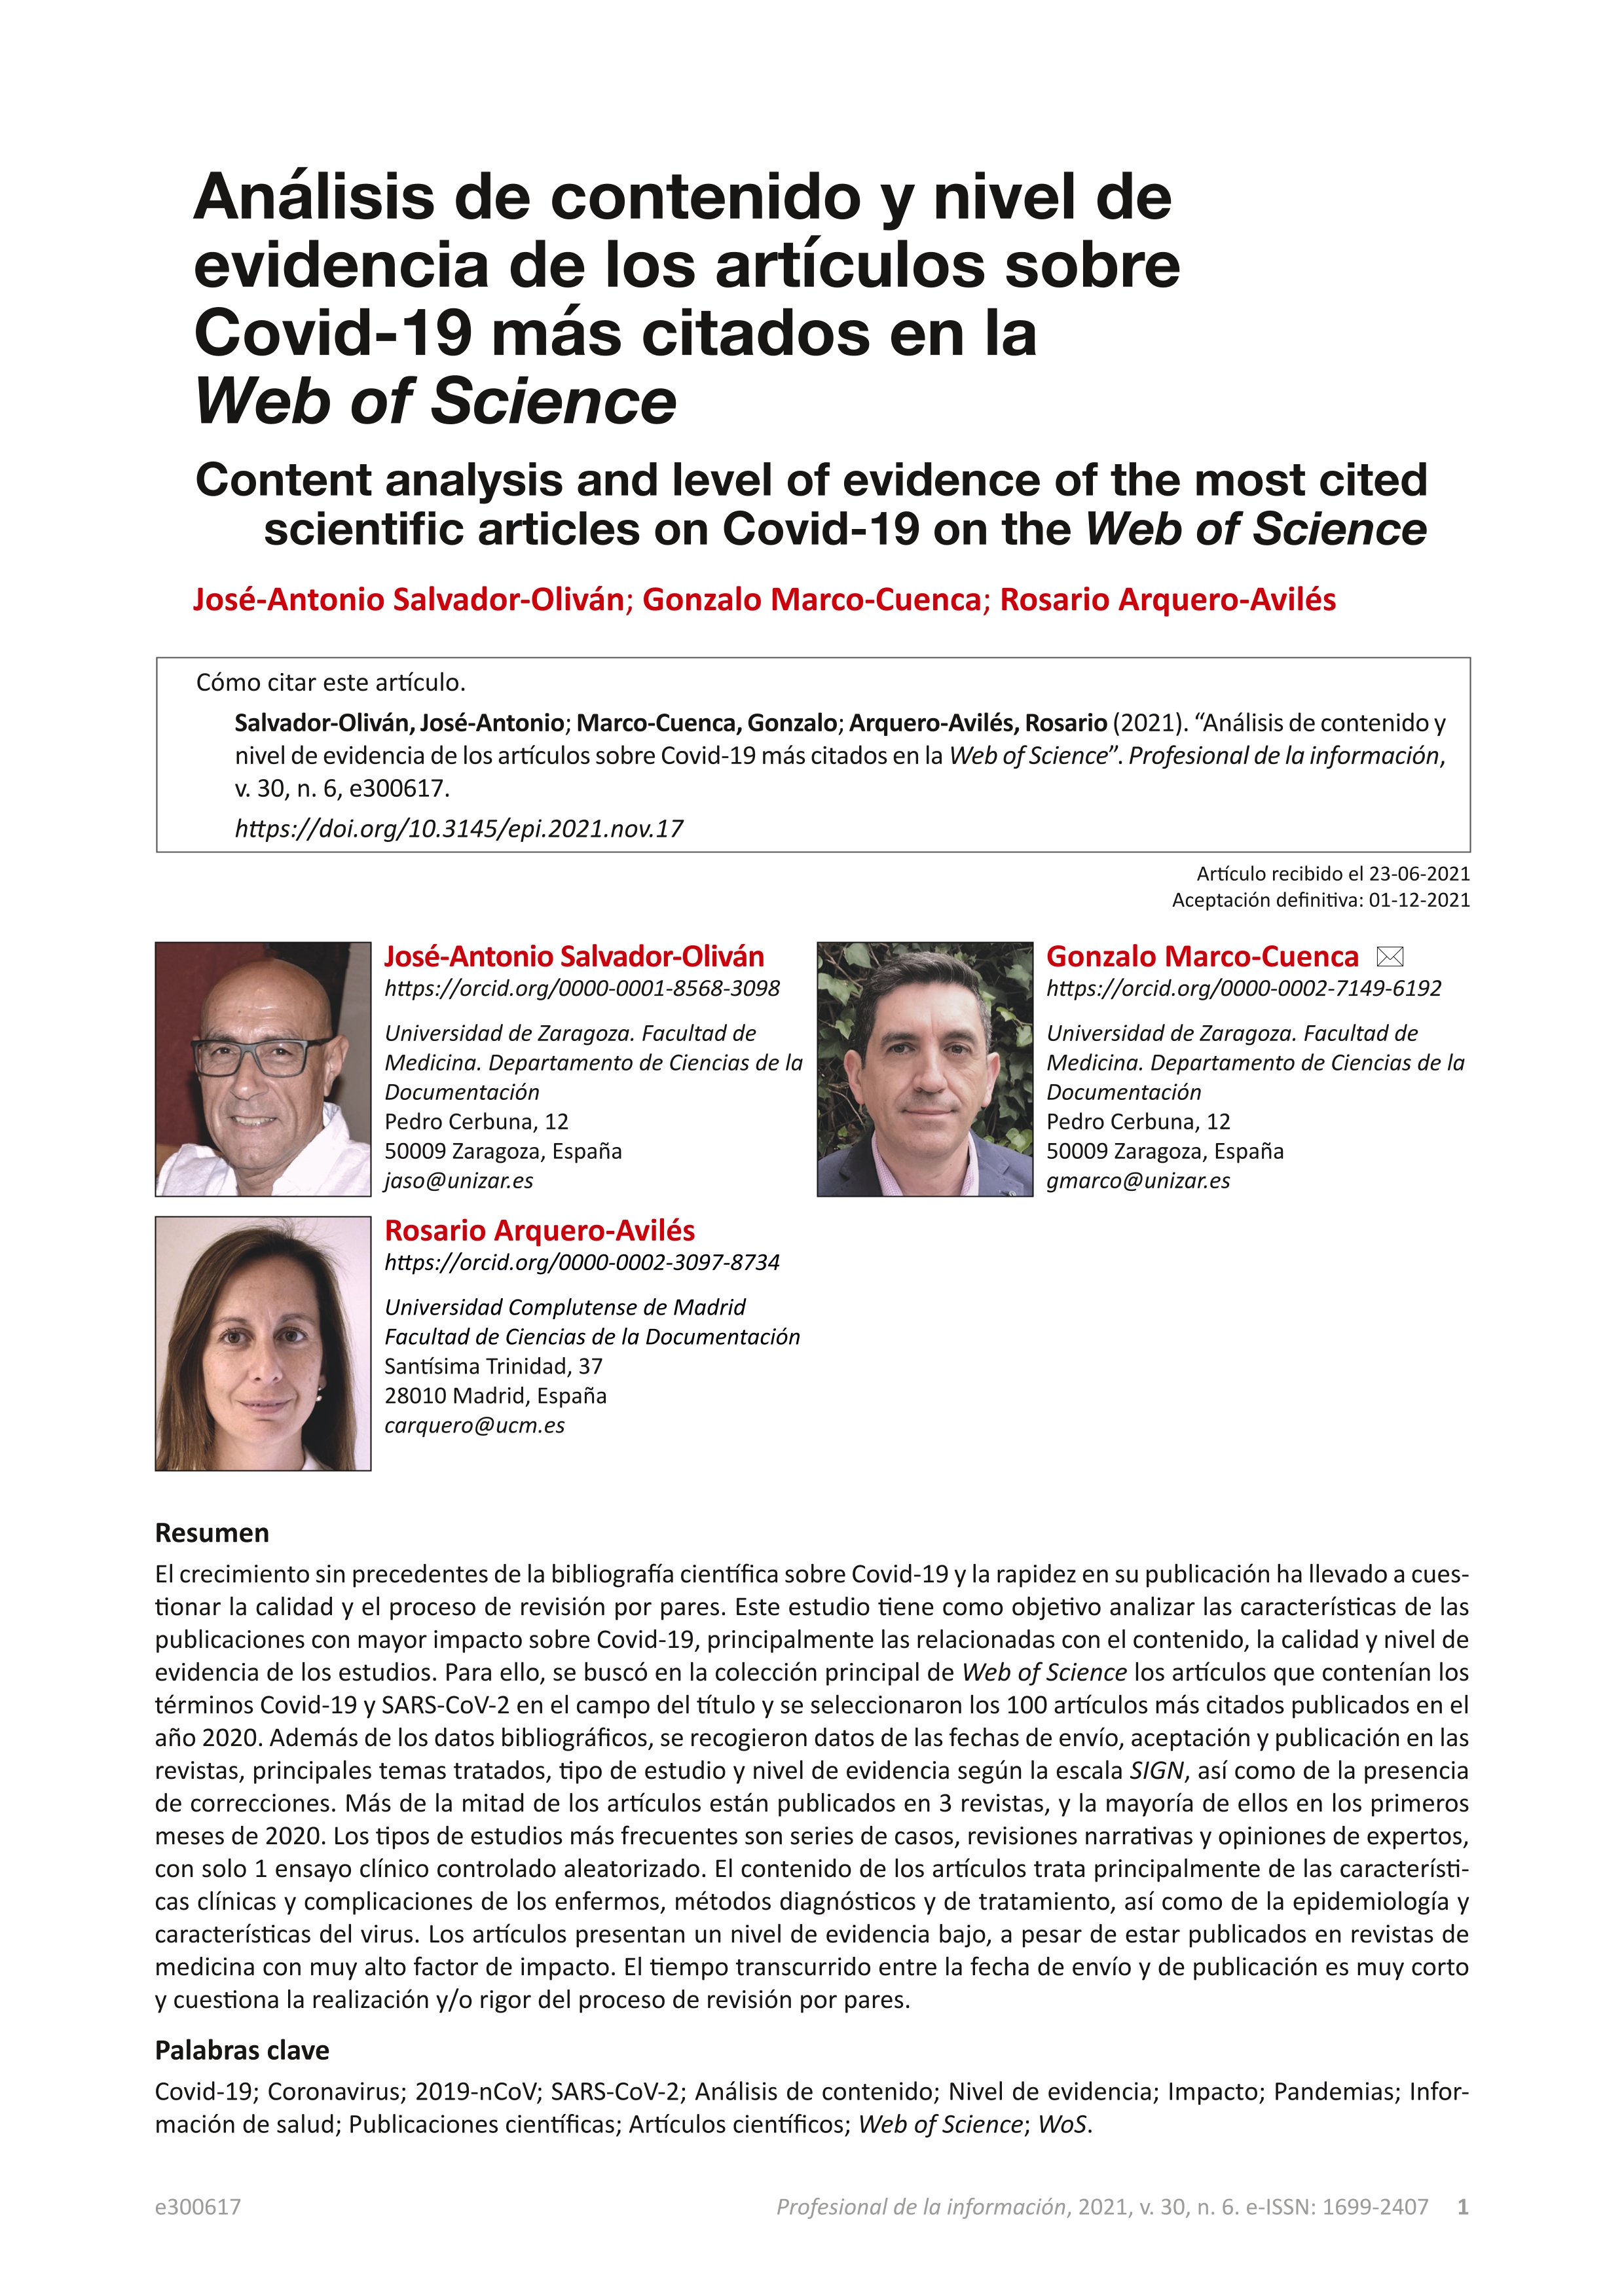 Análisis de contenido y nivel de evidencia de los artículos sobre Covid-19 más citados en la Web of Science